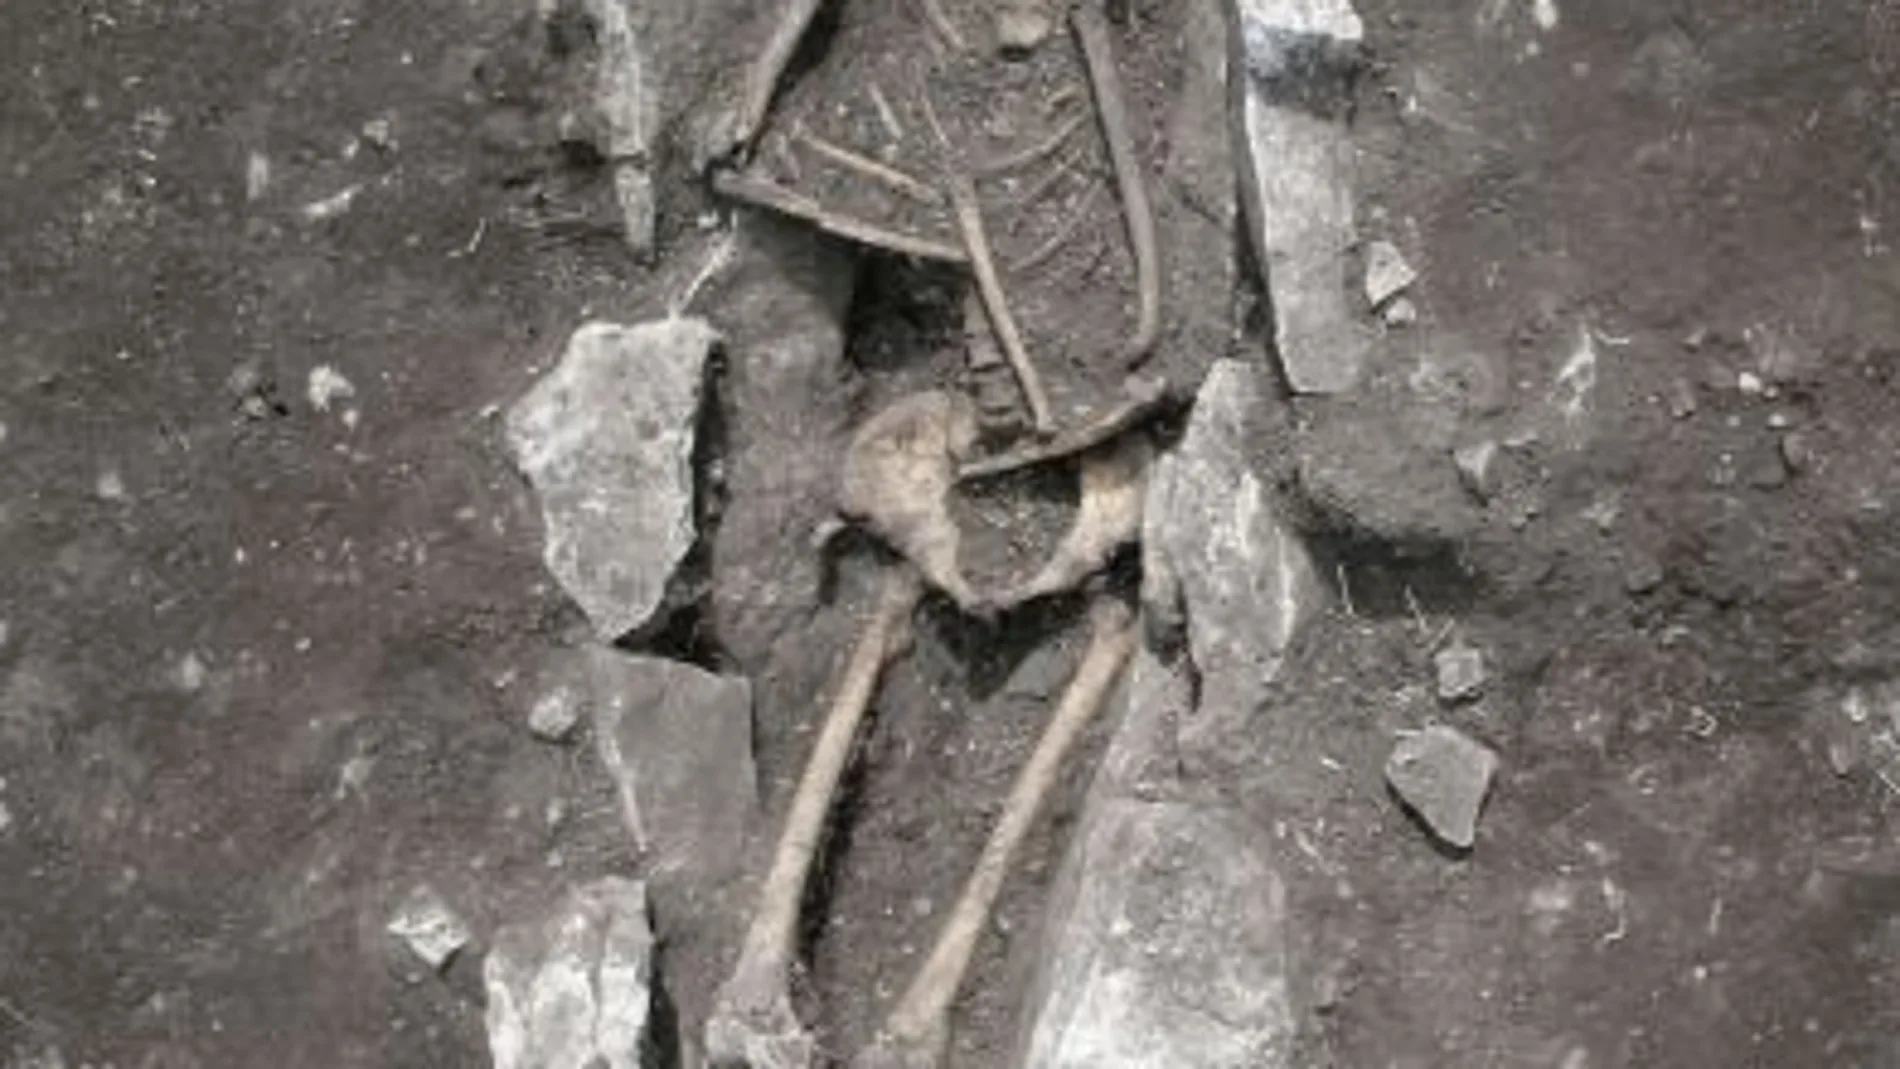 SIN CABEZA. El esqueleto hallado en el monte Liceo está desprovisto del cráneo, lo que ha hecho pensar a los investigadores que la muerte se debió a un sacrificio ritual en honor a los dioses